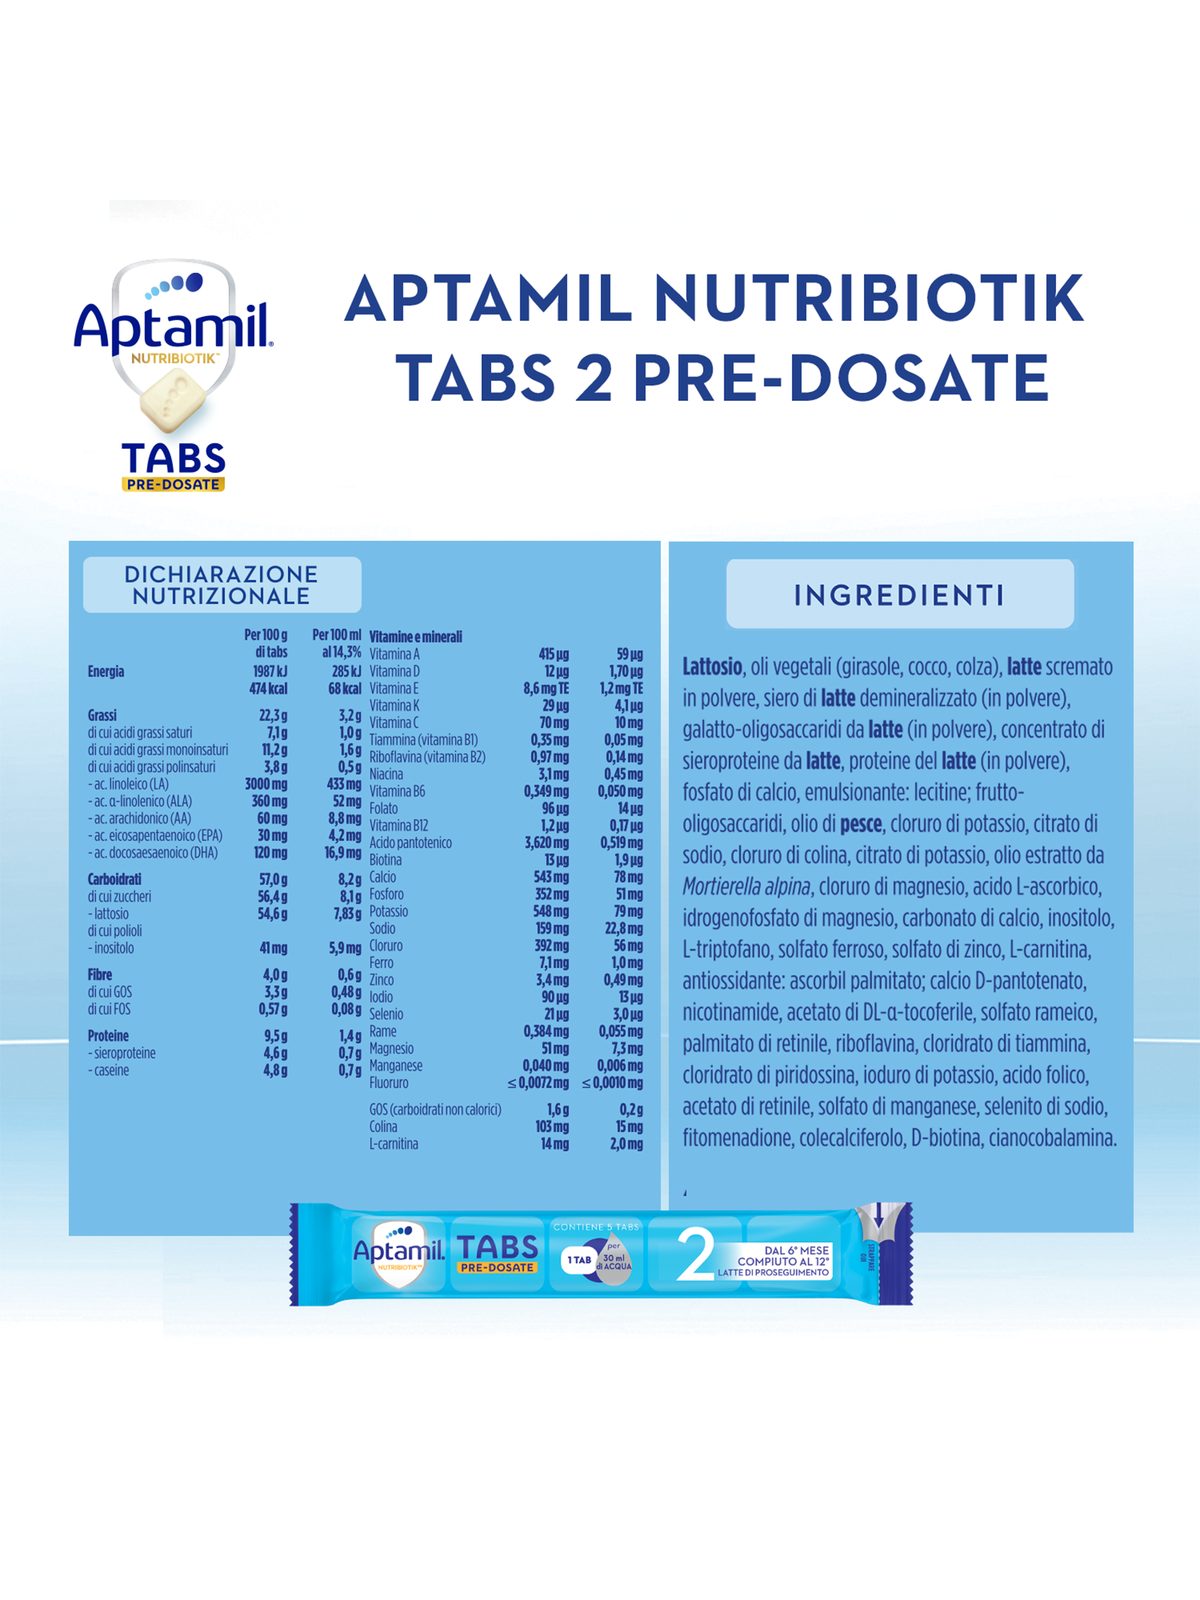 Aptamil nutribiotik tabs 2 pre-dosate  - latte di proseguimento in tabs pre-dosate -  dal 6° mese compiuto al 12° - confezione da 21 bustine ( 105 tabs pre-dosate) - Aptamil